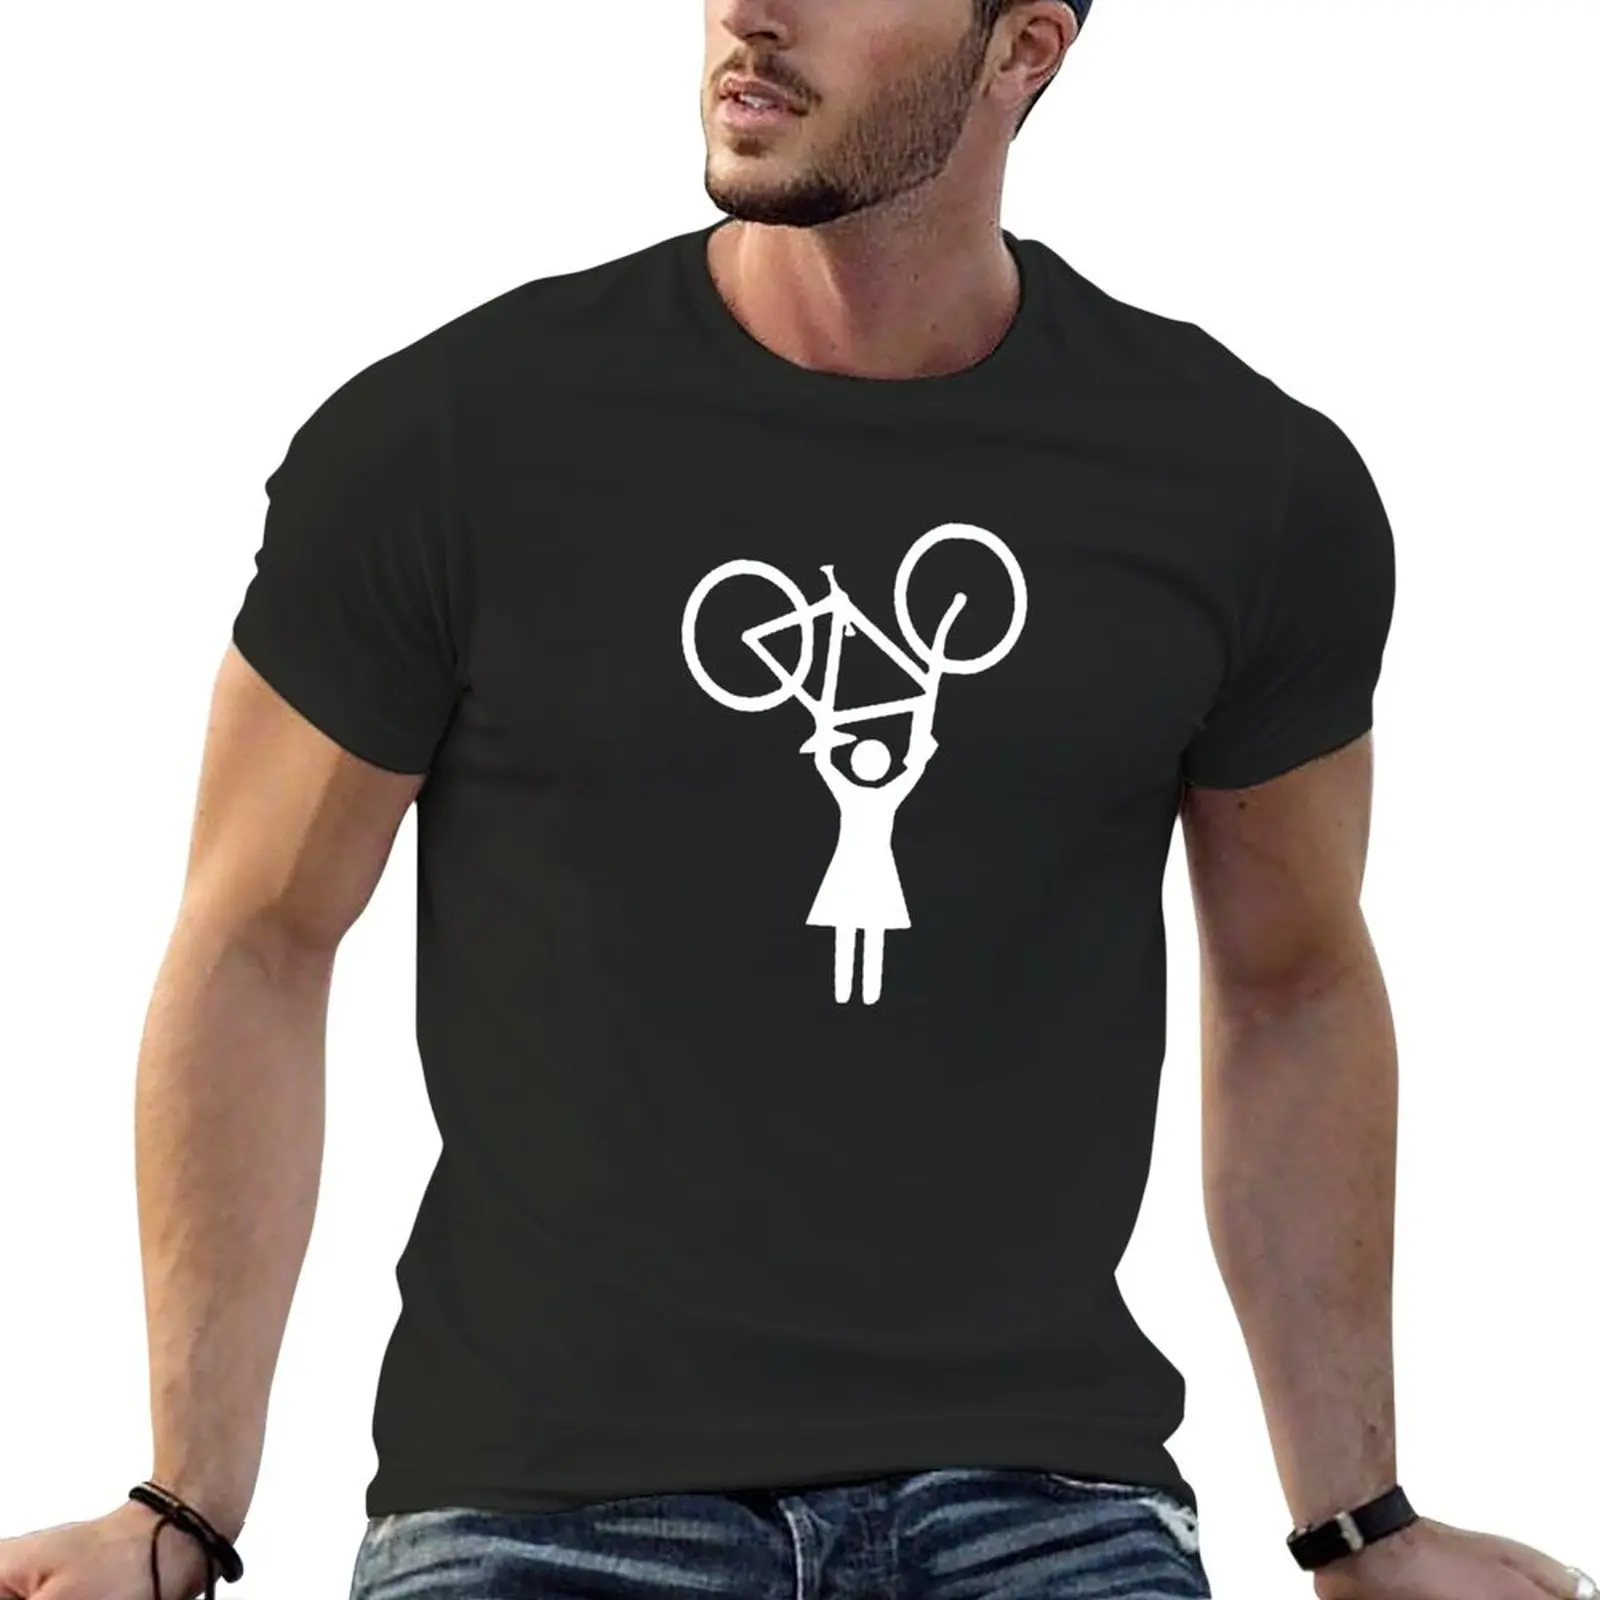 

Женская футболка с принтом велосипеда, забавная футболка с графическим принтом, короткая футболка, одежда в эстетике, мужские футболки с графическим принтом, большие и высокие